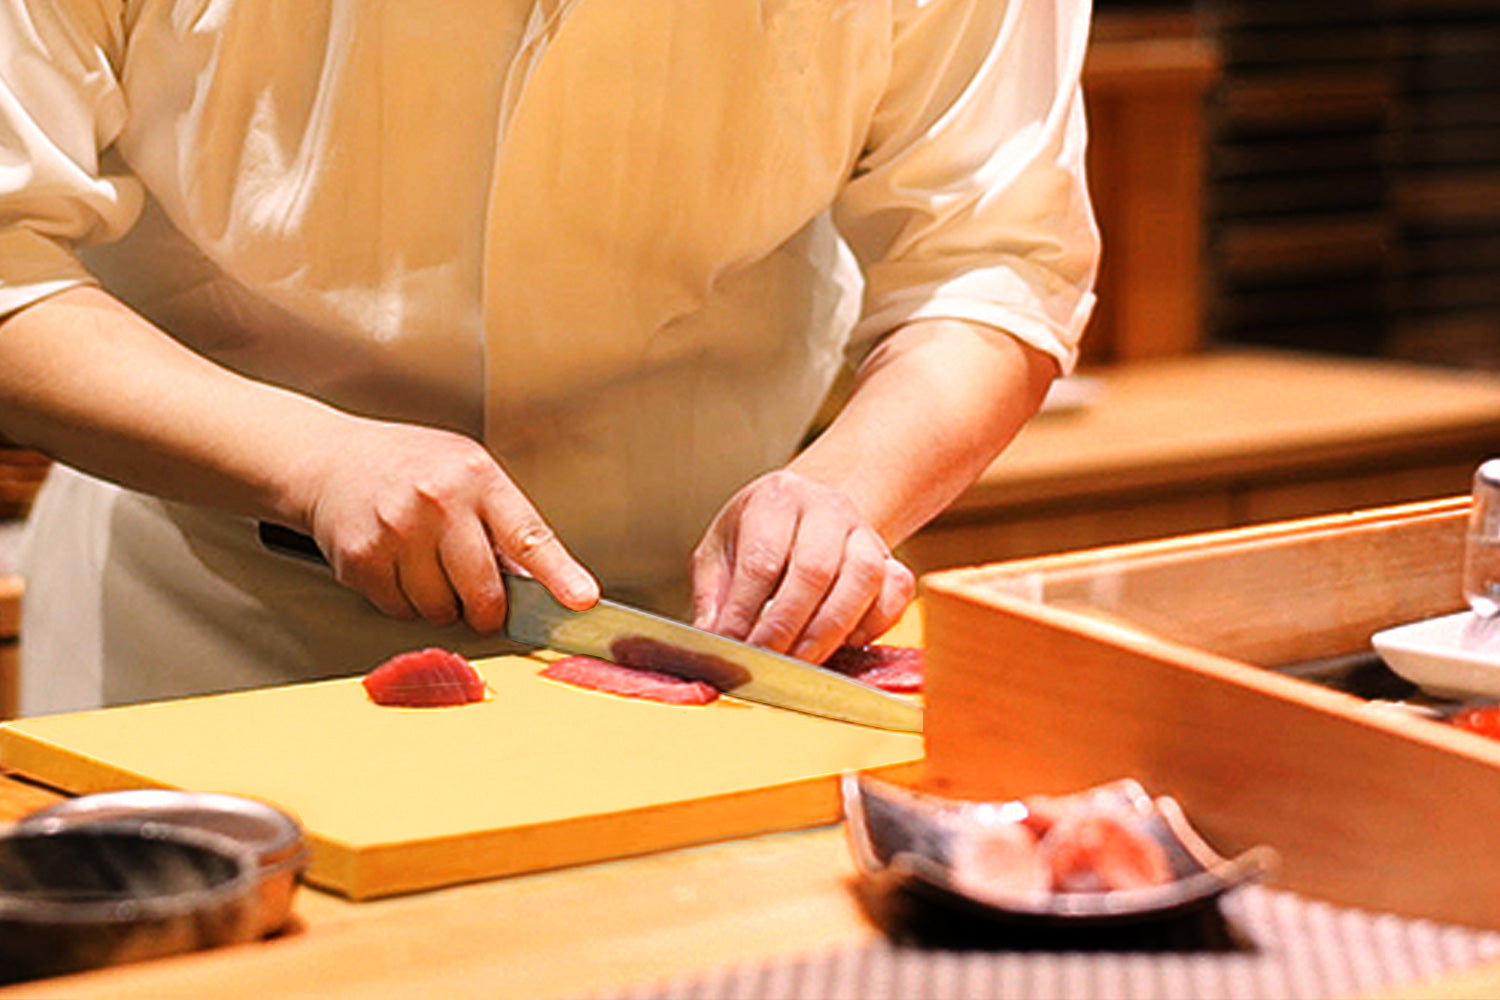 Yoshihiro - Tabla de cortar de grado profesional de alto rendimiento de  alta suavidad, herramienta de chef japonesa Sashimi fabricada en Japón (XL)